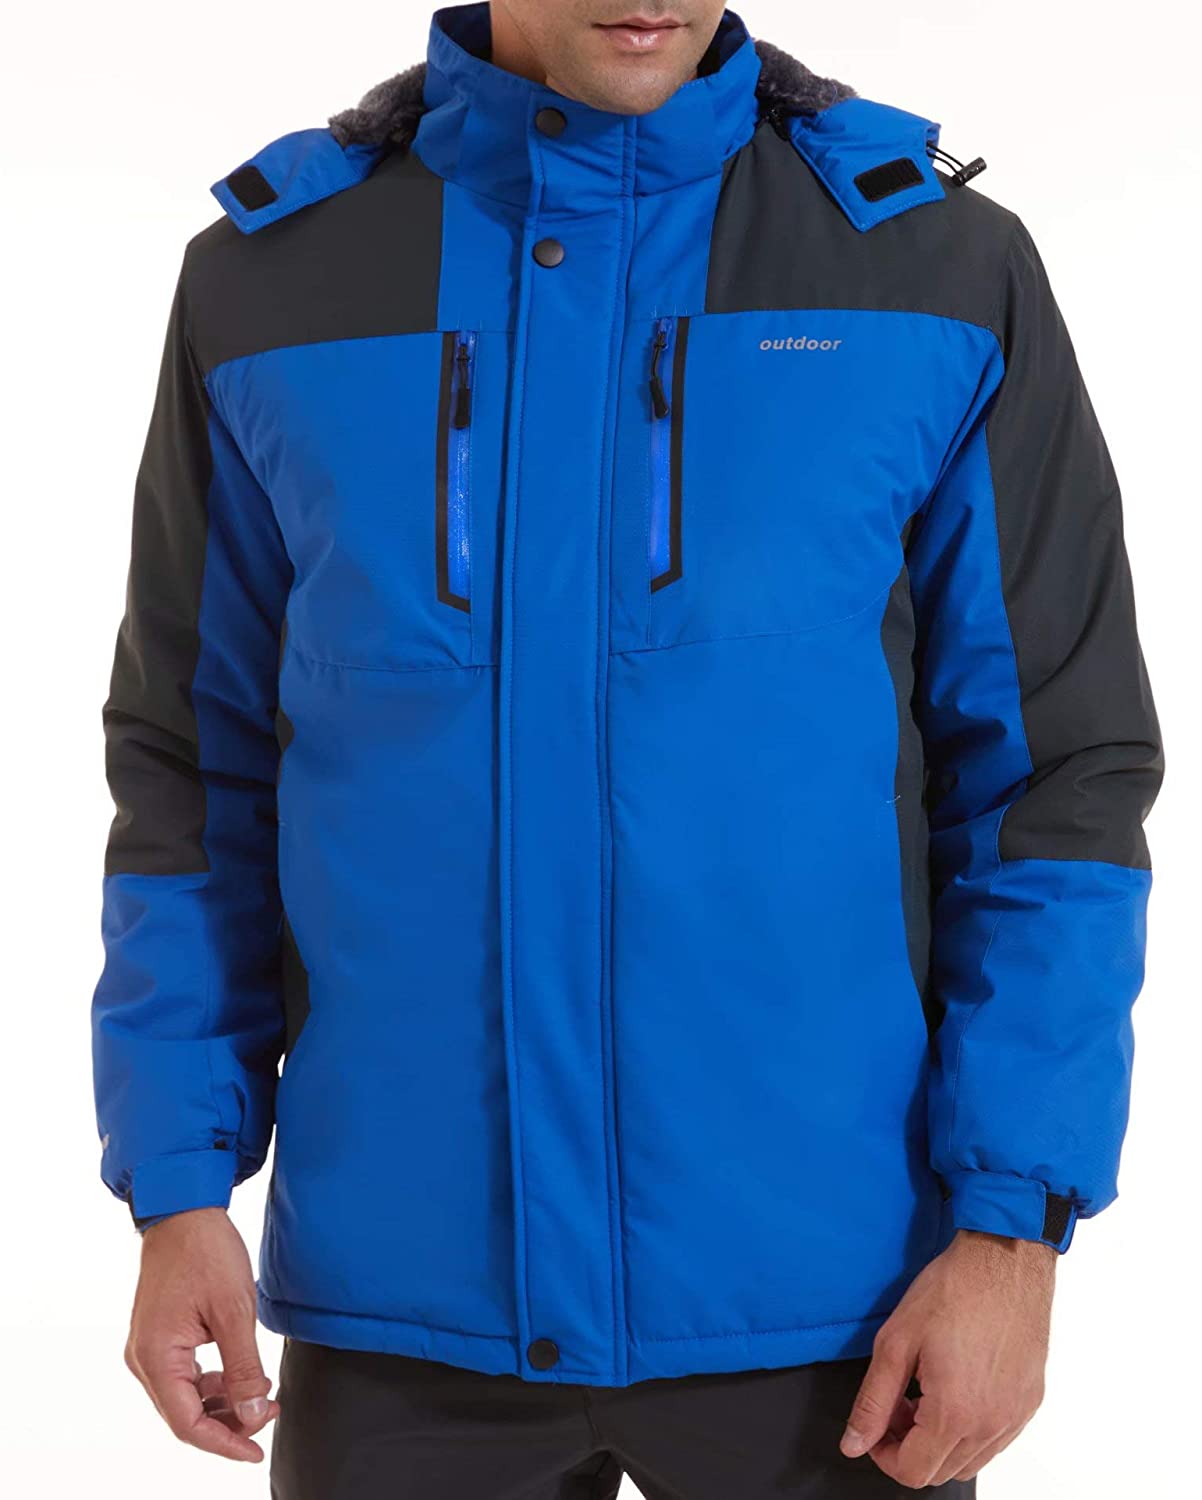 MAGCOMSEN Men's Winter Coats Water Resistant Ski Snow Jacket Warm ...